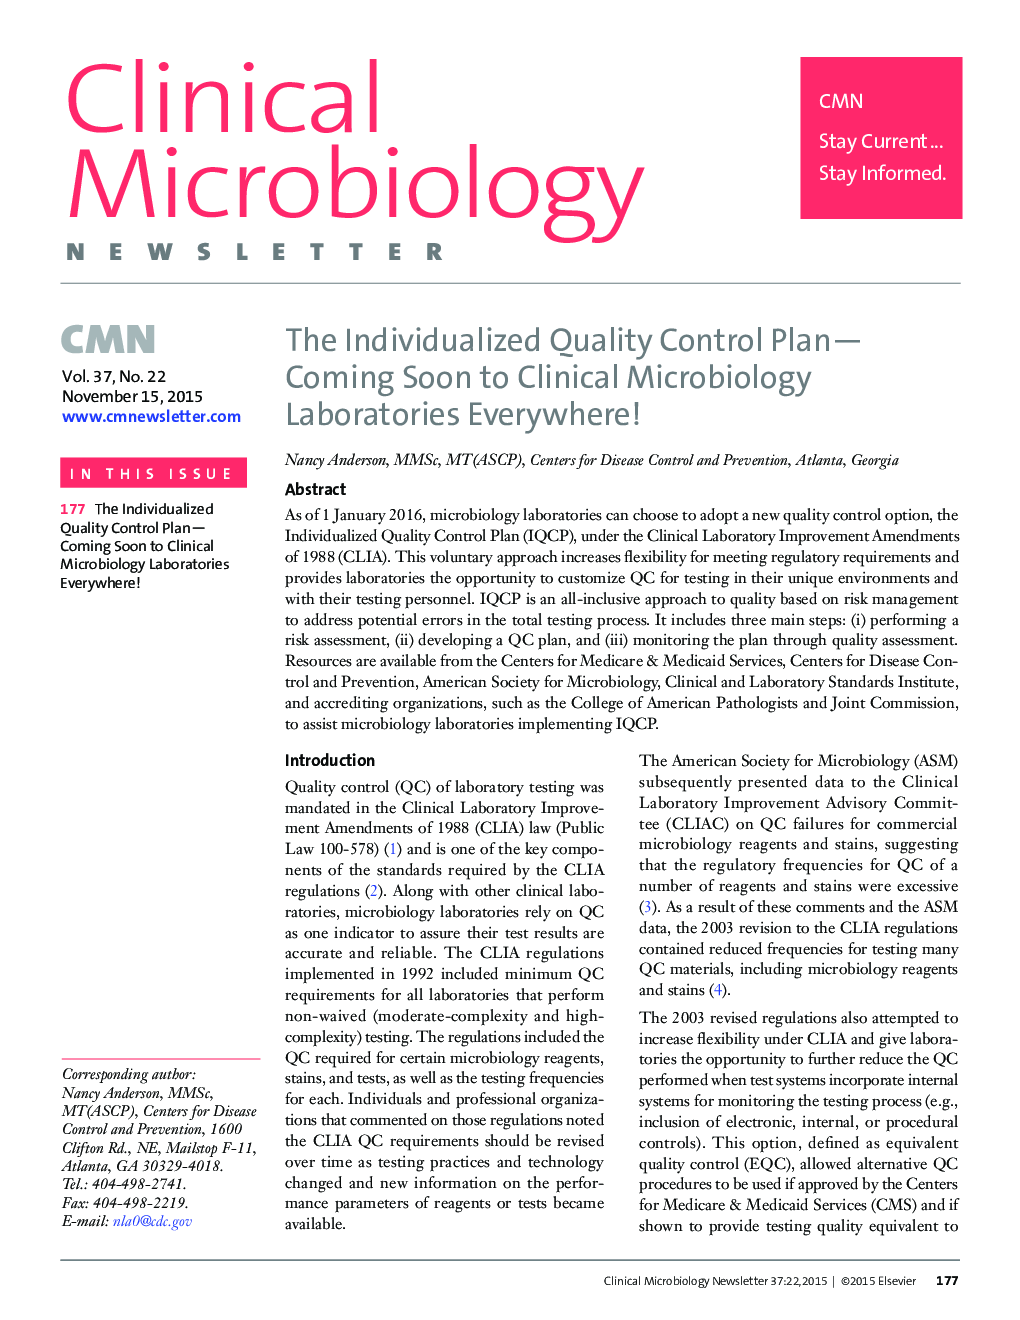 برنامه کنترل کیفیت فردی به زودی به آزمایشگاه های میکروبیولوژی بالینی در همه جا! 